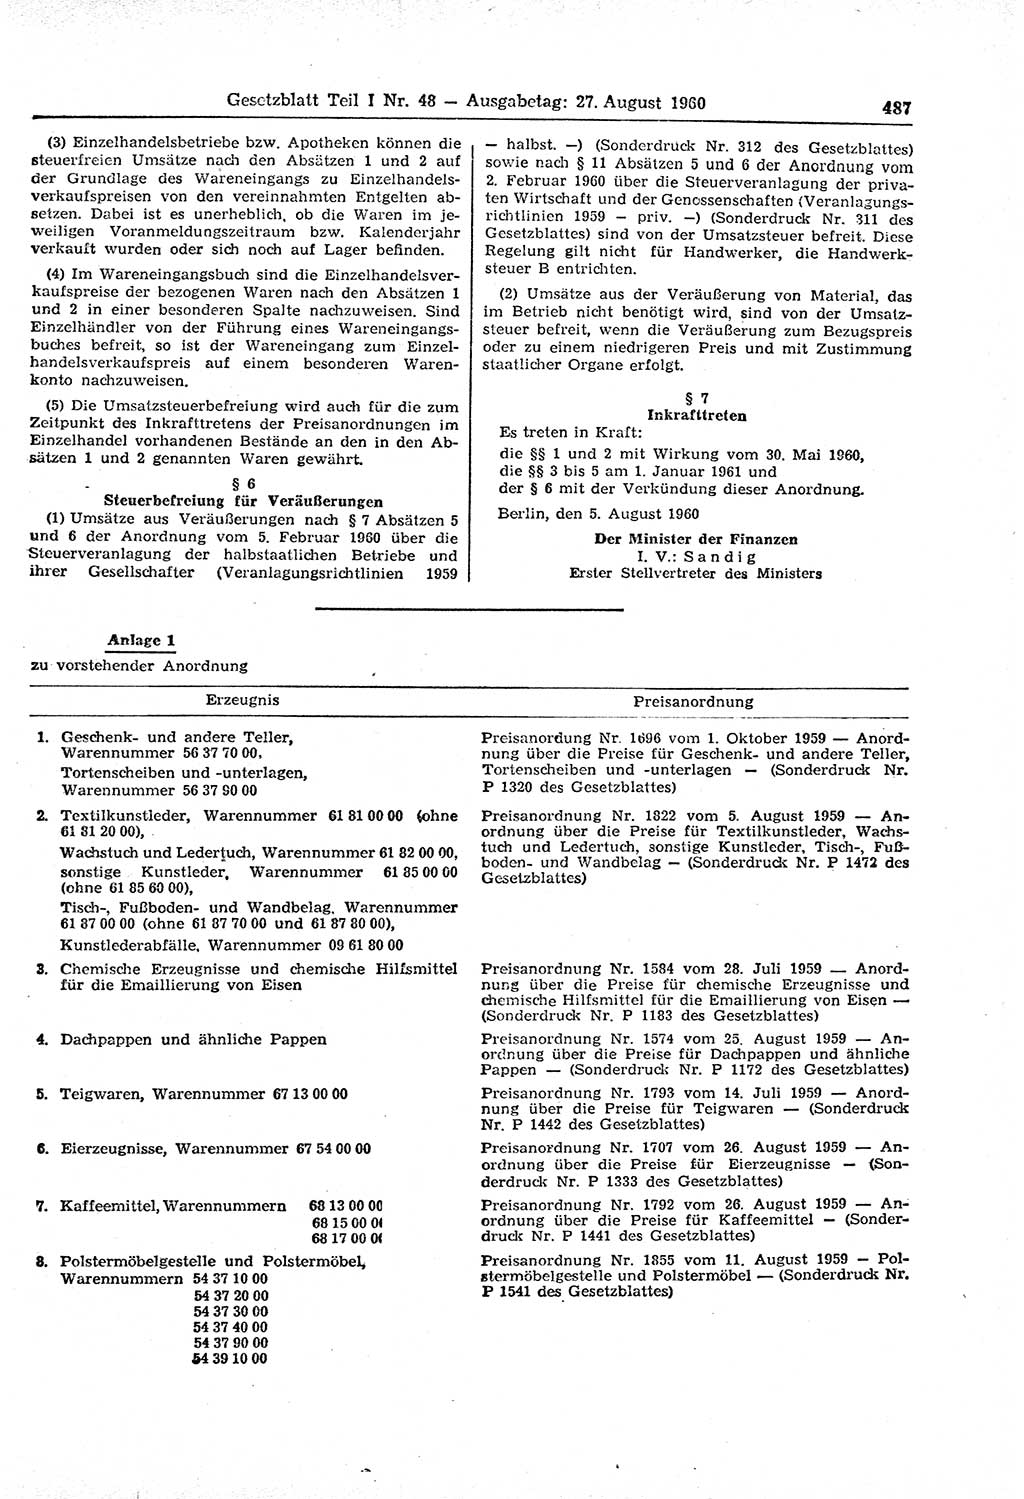 Gesetzblatt (GBl.) der Deutschen Demokratischen Republik (DDR) Teil Ⅰ 1960, Seite 487 (GBl. DDR Ⅰ 1960, S. 487)